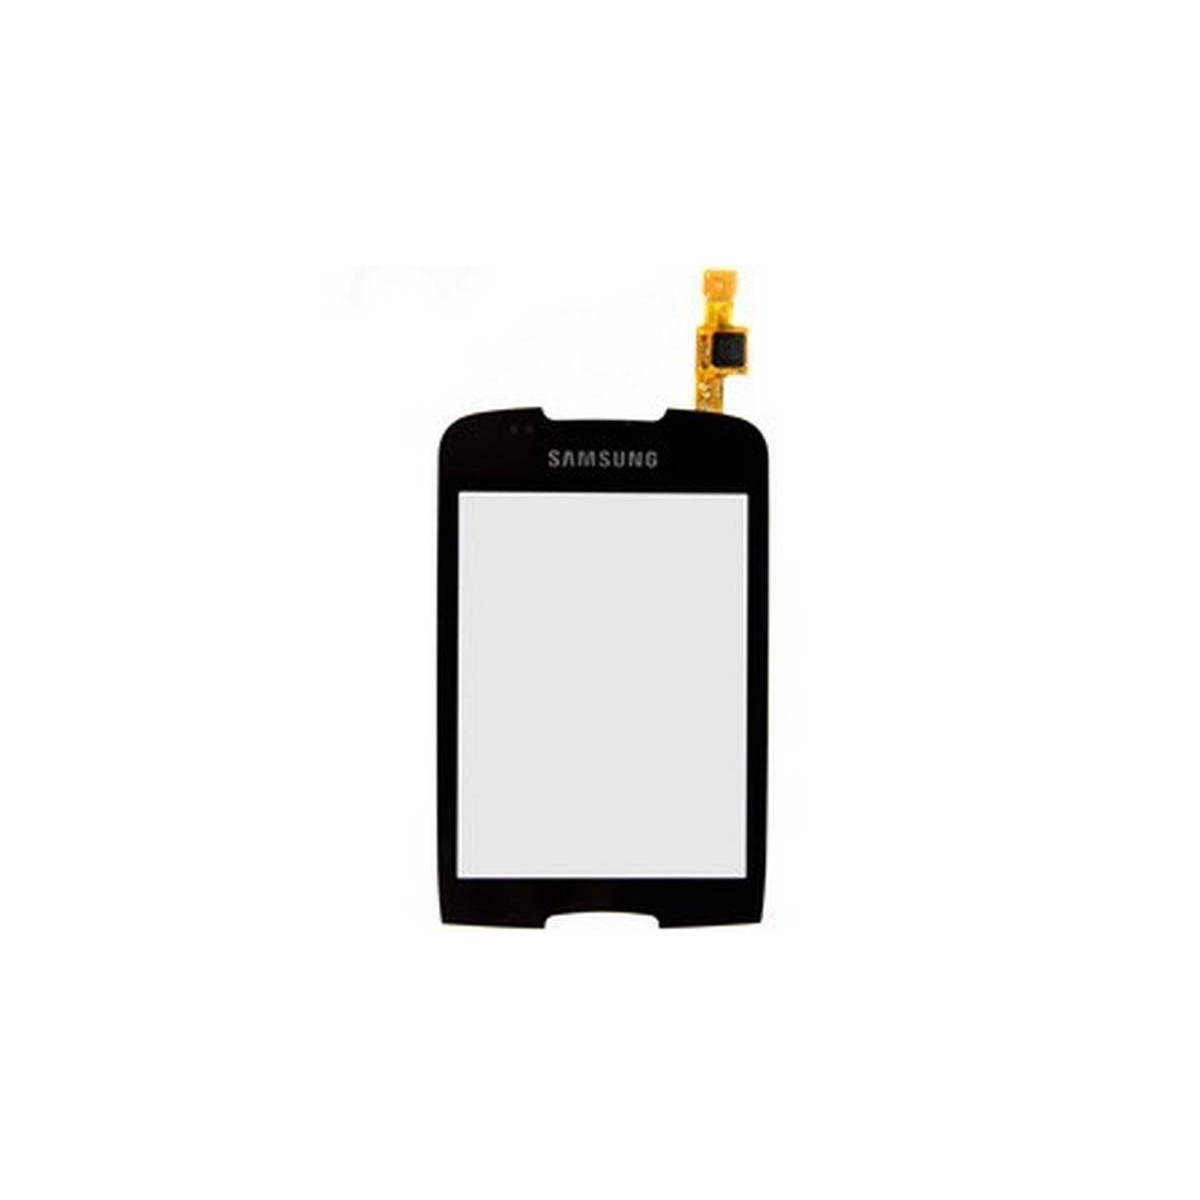 Pantalla táctil (Digitalizador) Original de Samsung S5570 S5570i Galaxy Mini negro